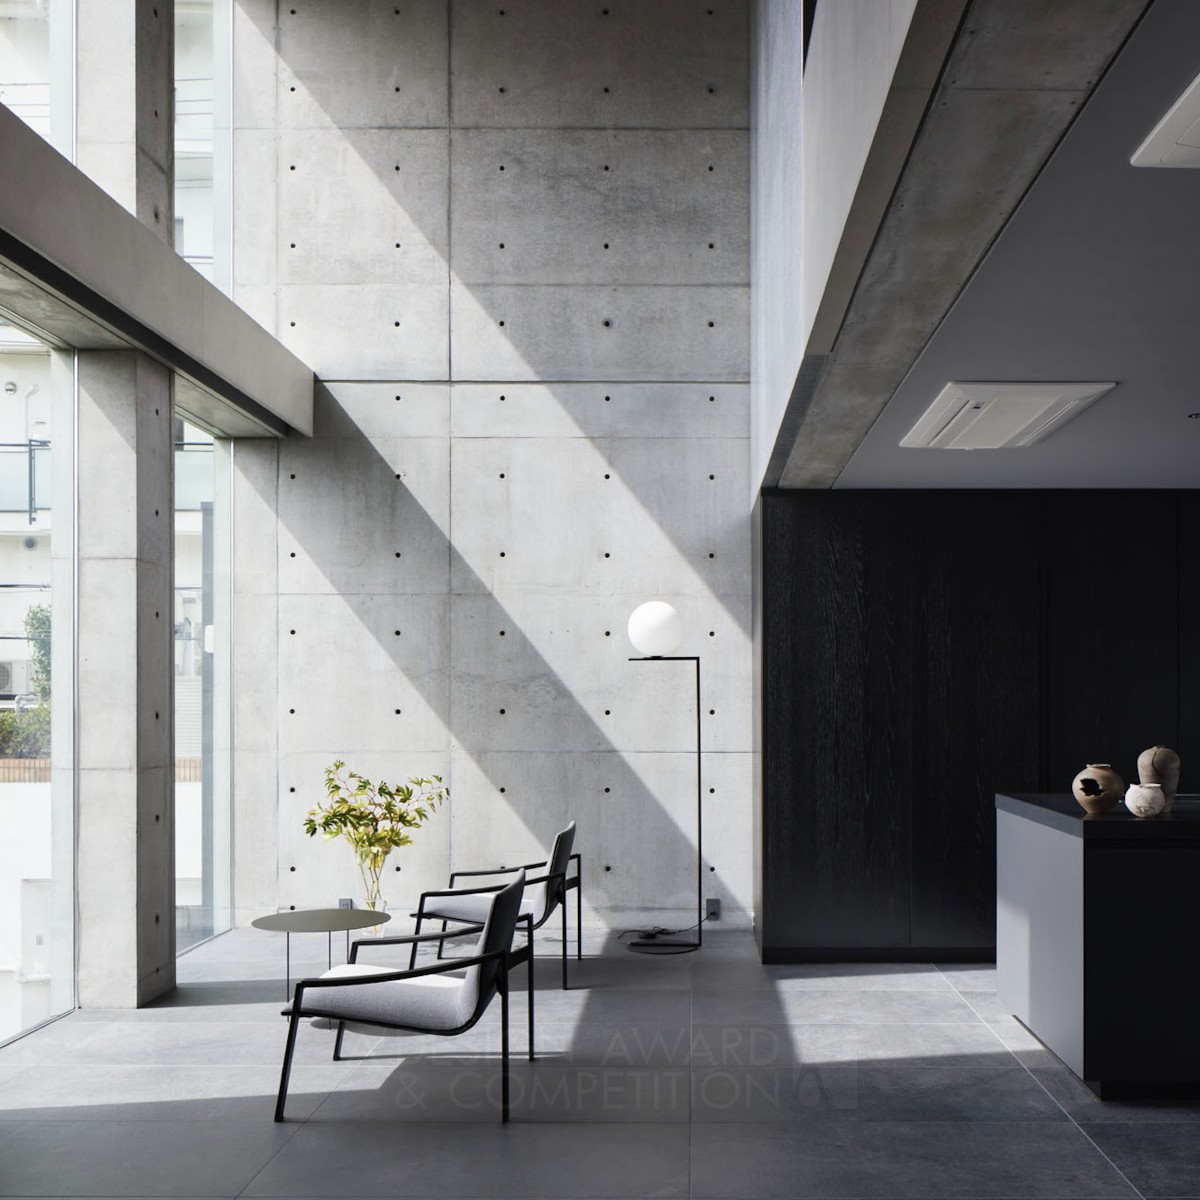 Go Fujita wins Silver at the prestigious A' Interior Space, Retail and Exhibition Design Award with S House Private Villa.